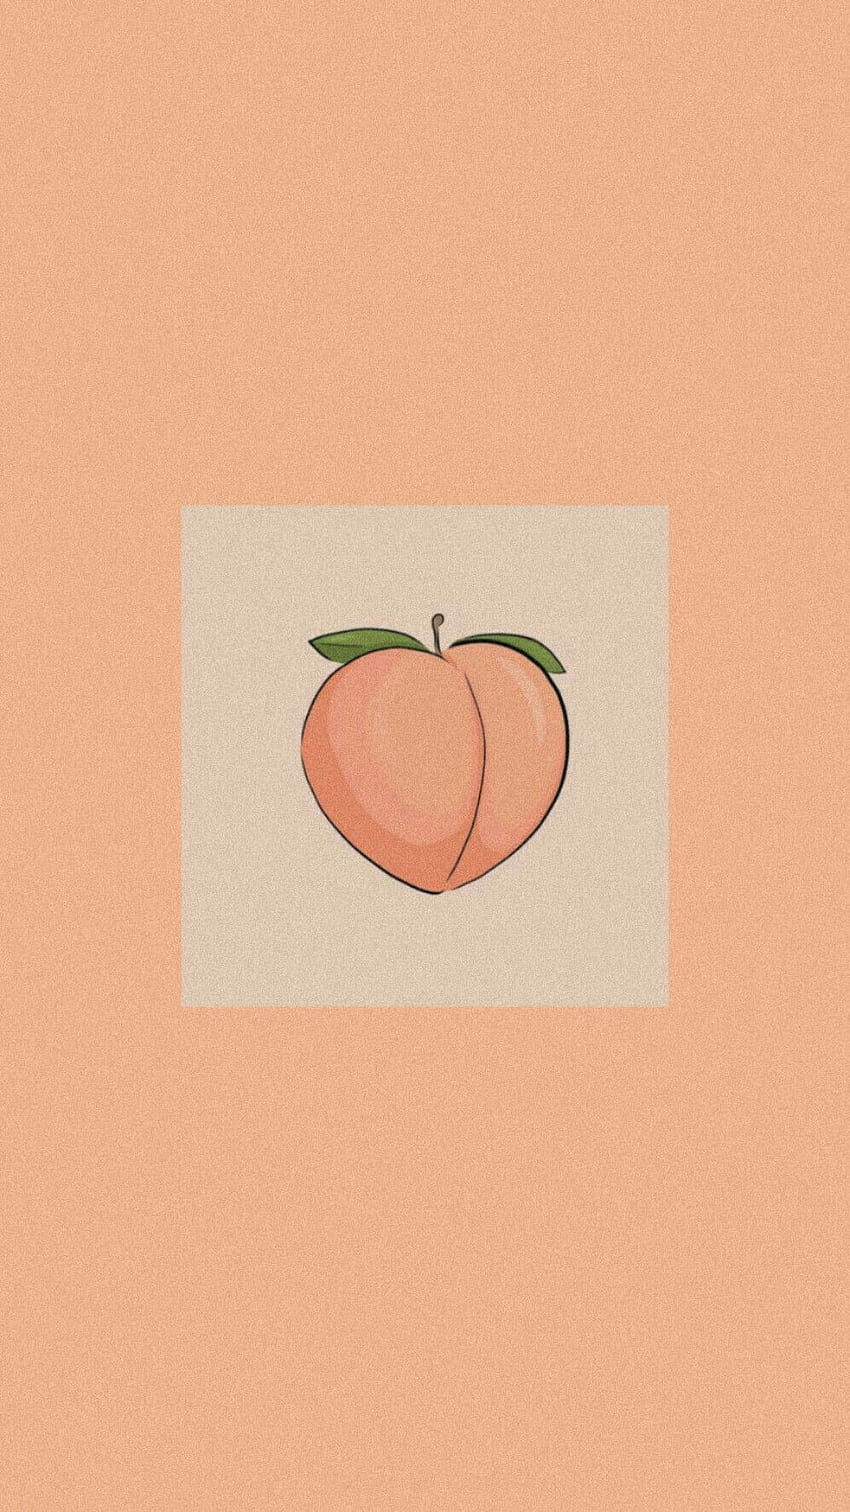 IPhone wallpaper of a peach - Peach